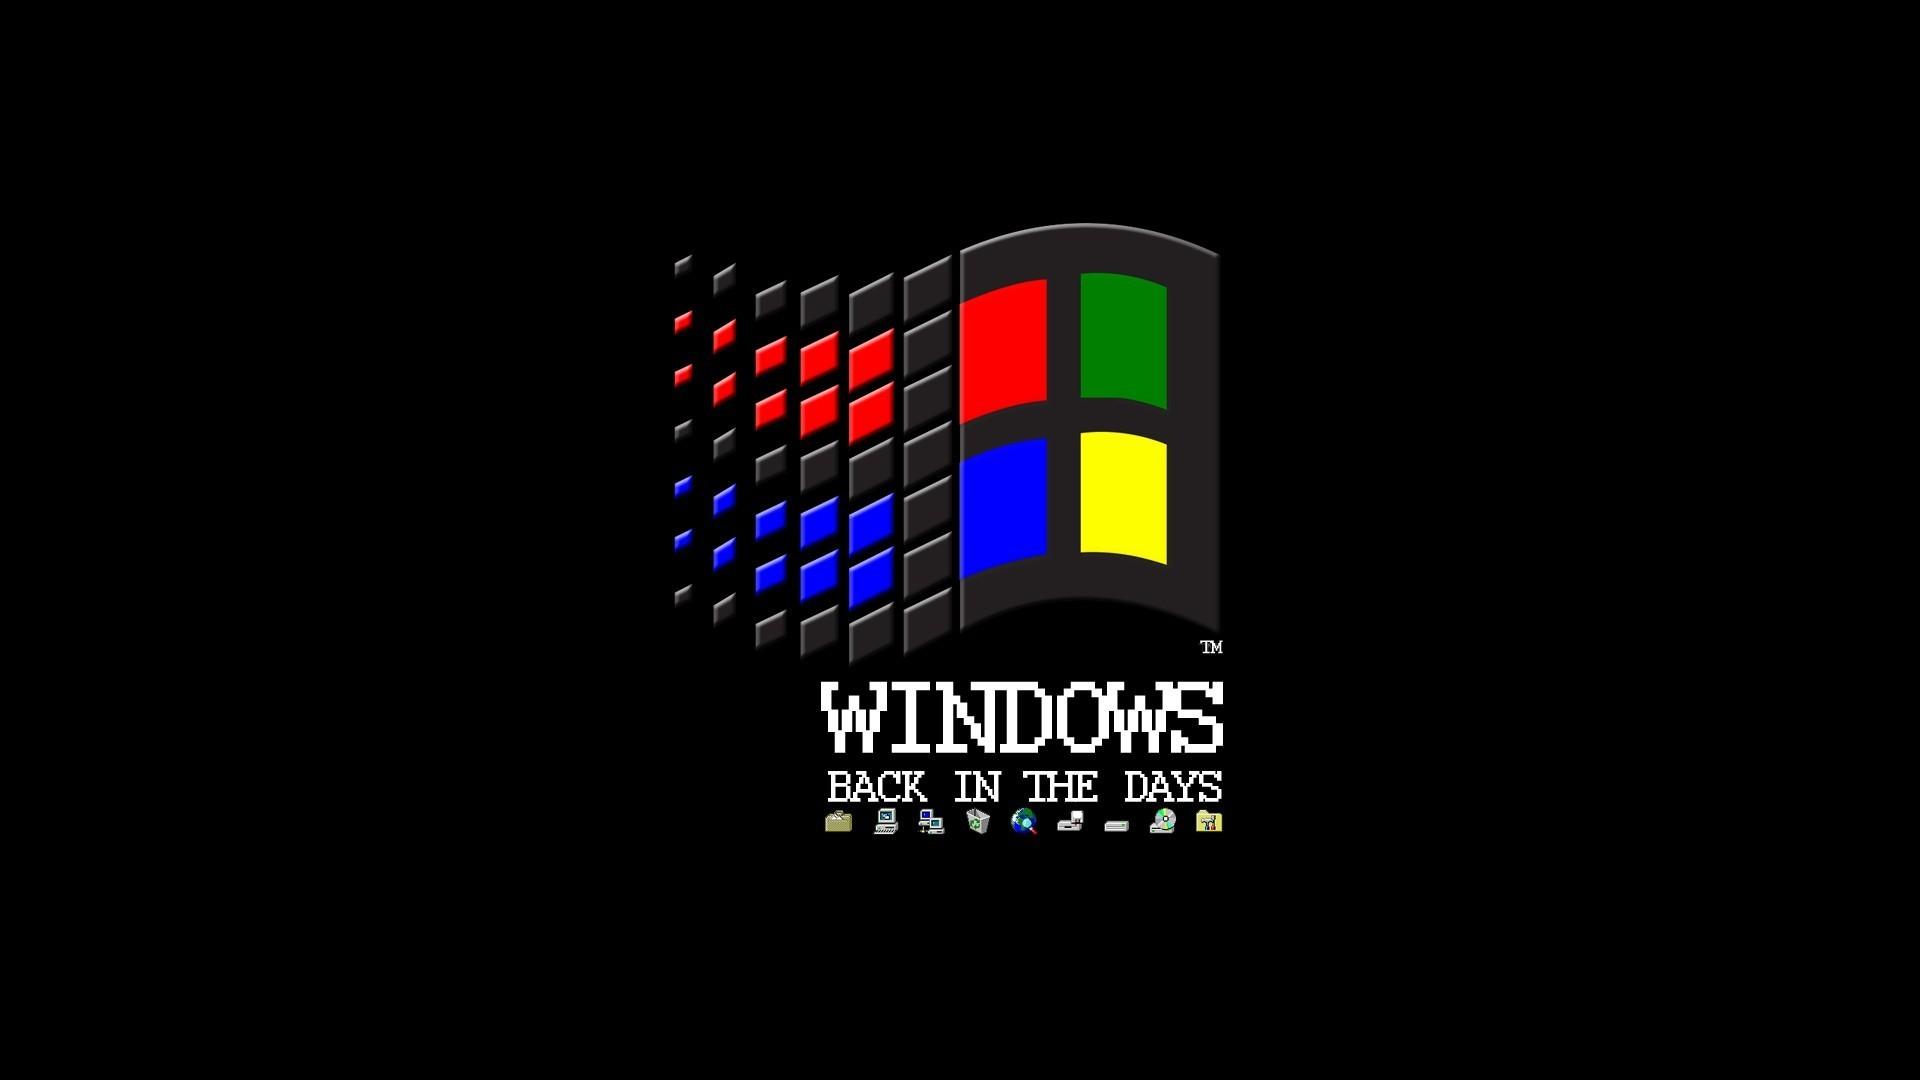 Windows98 壁紙 最もダウンロードされたhd壁紙画像のコレクション